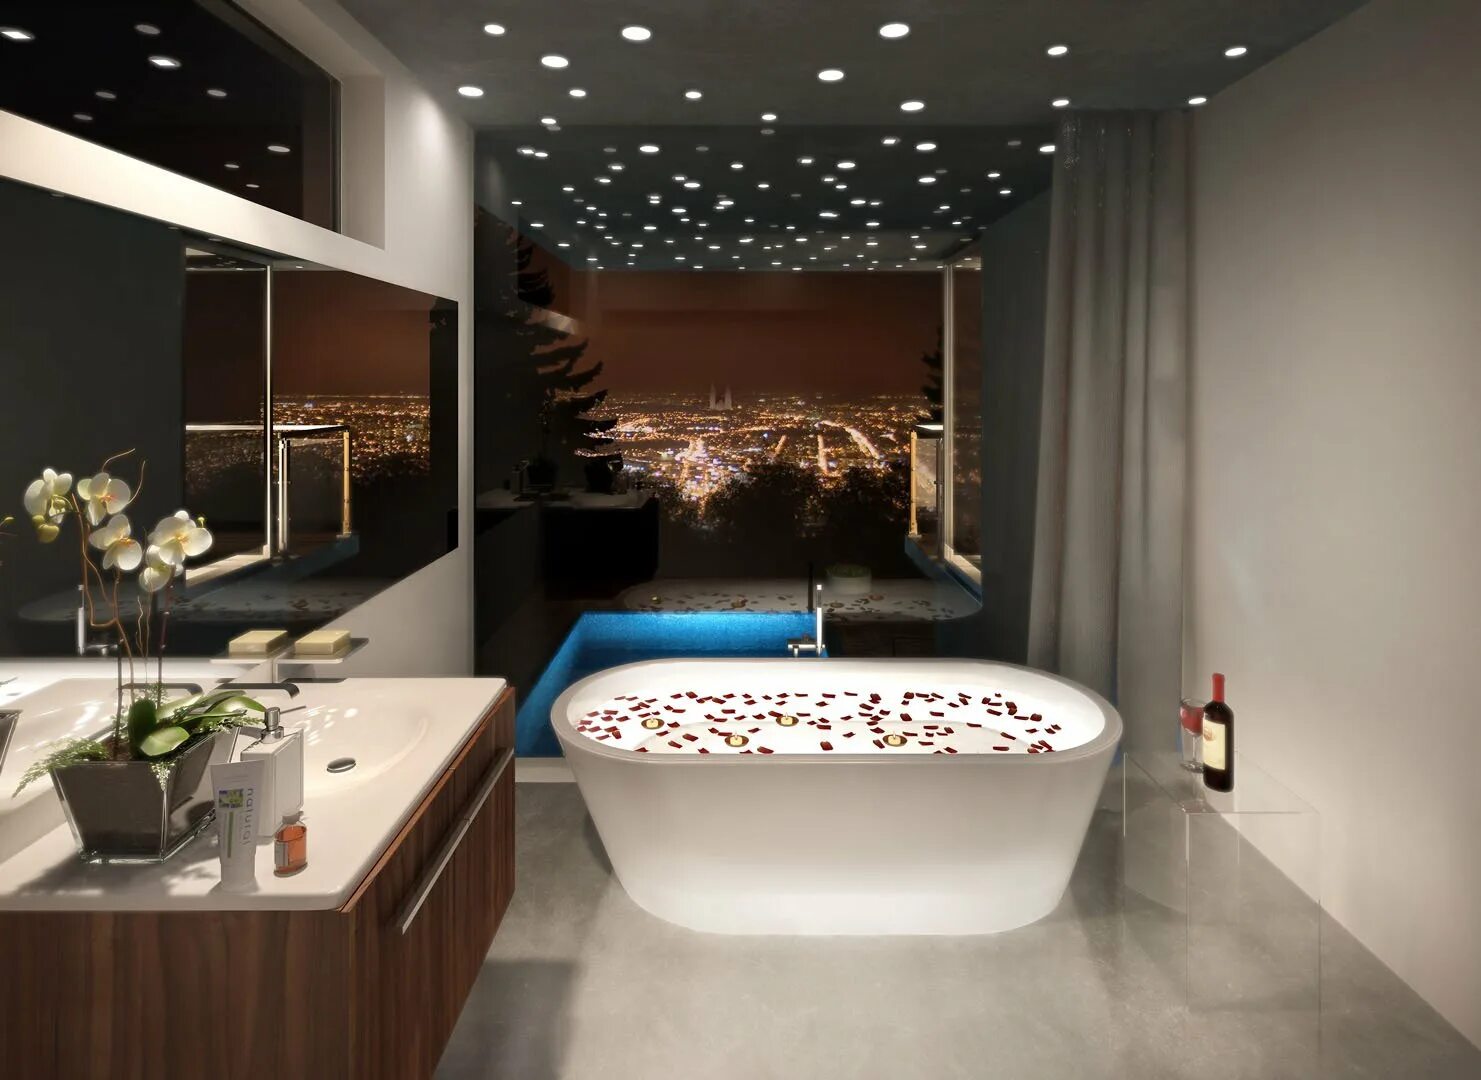 Ванная комната вода. Красивая ванная. Красивая ванная комната с джакузи. Современная ванная комната с джакузи. Шикарная ванная комната с джакузи.